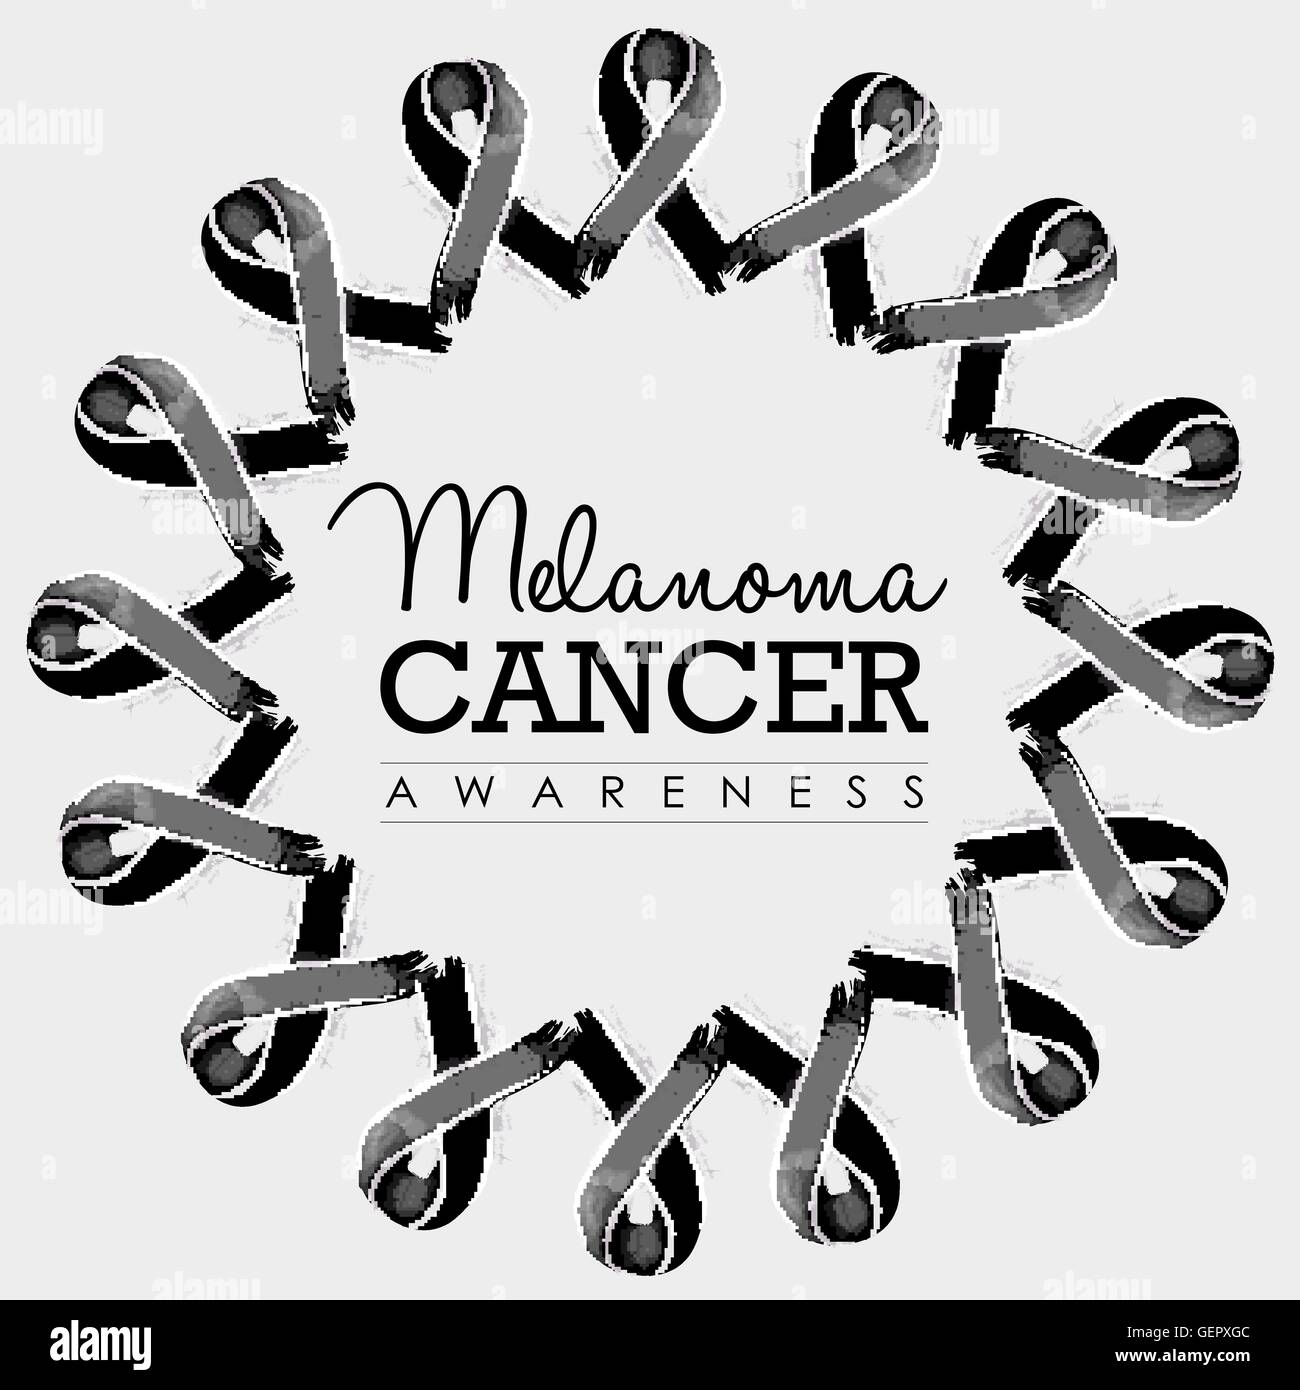 Il melanoma cancro consapevolezza design tipografia con mandala fatto di mano nera tracciata nastri. EPS10 vettore. Illustrazione Vettoriale